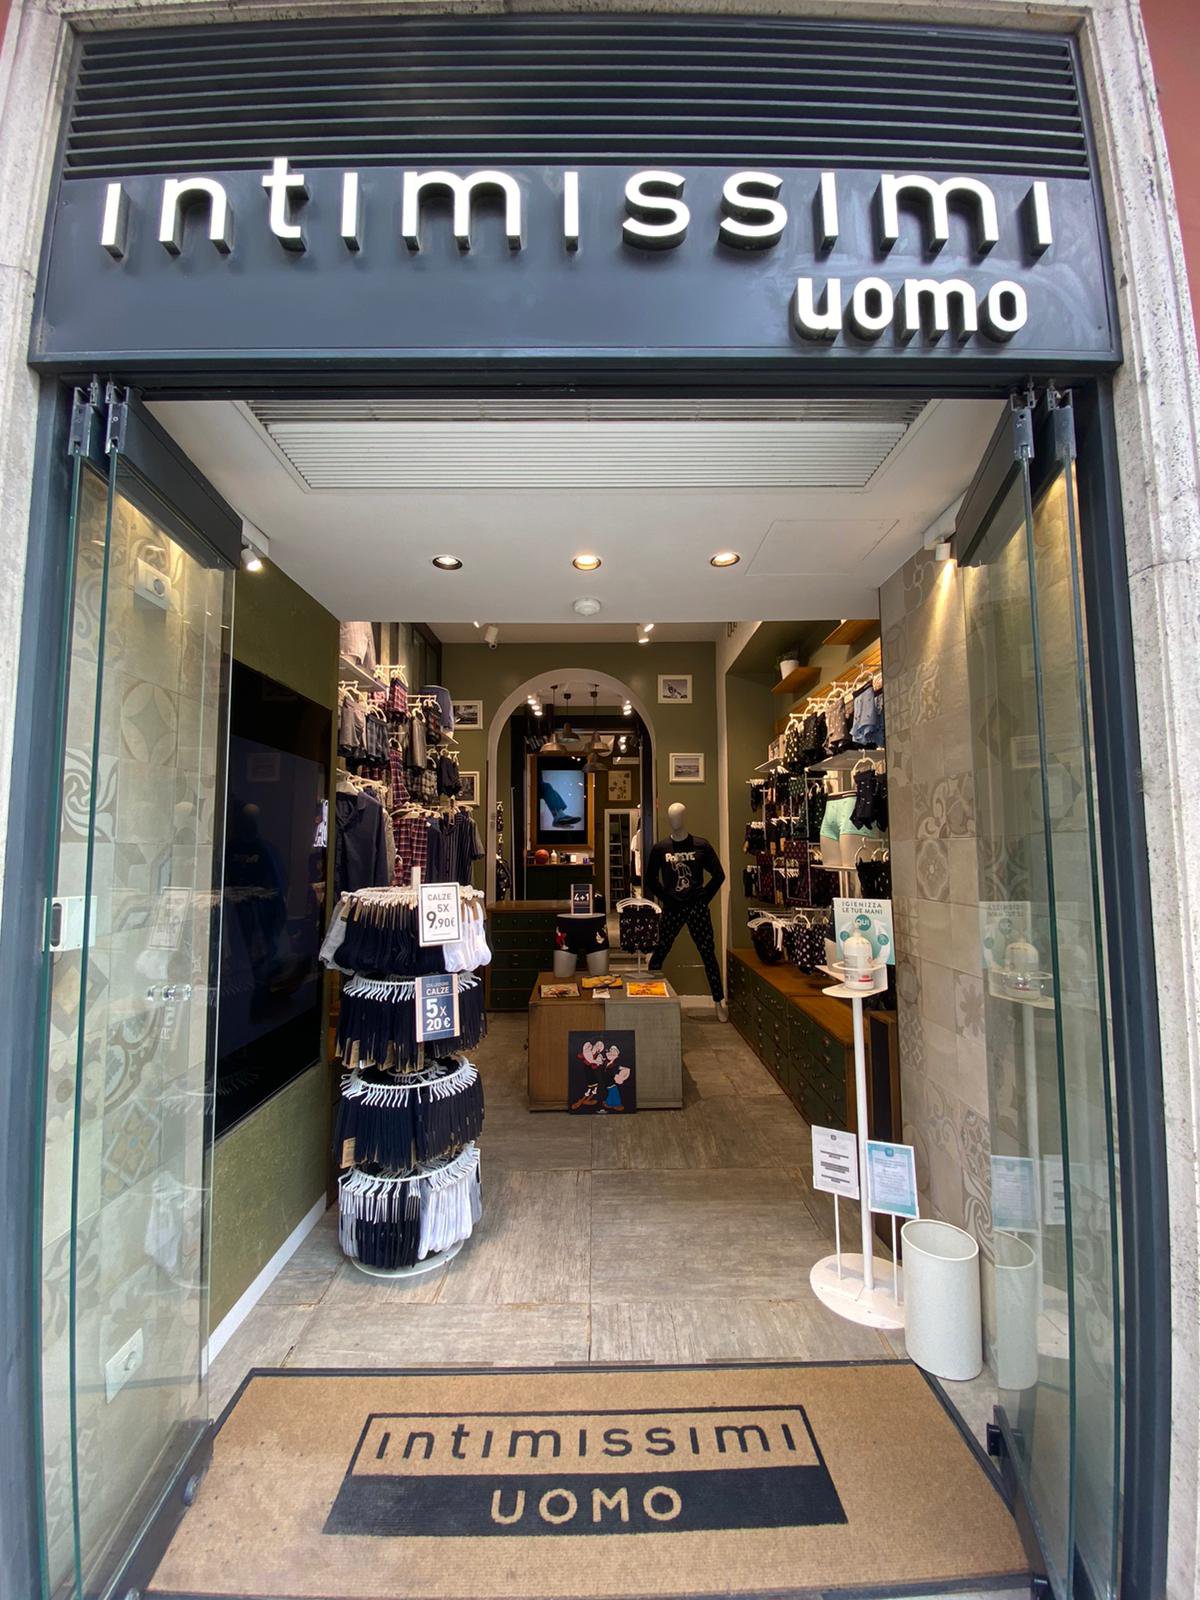 Intimissimi Uomo, clothing store, Rome, Via del Corso, 146